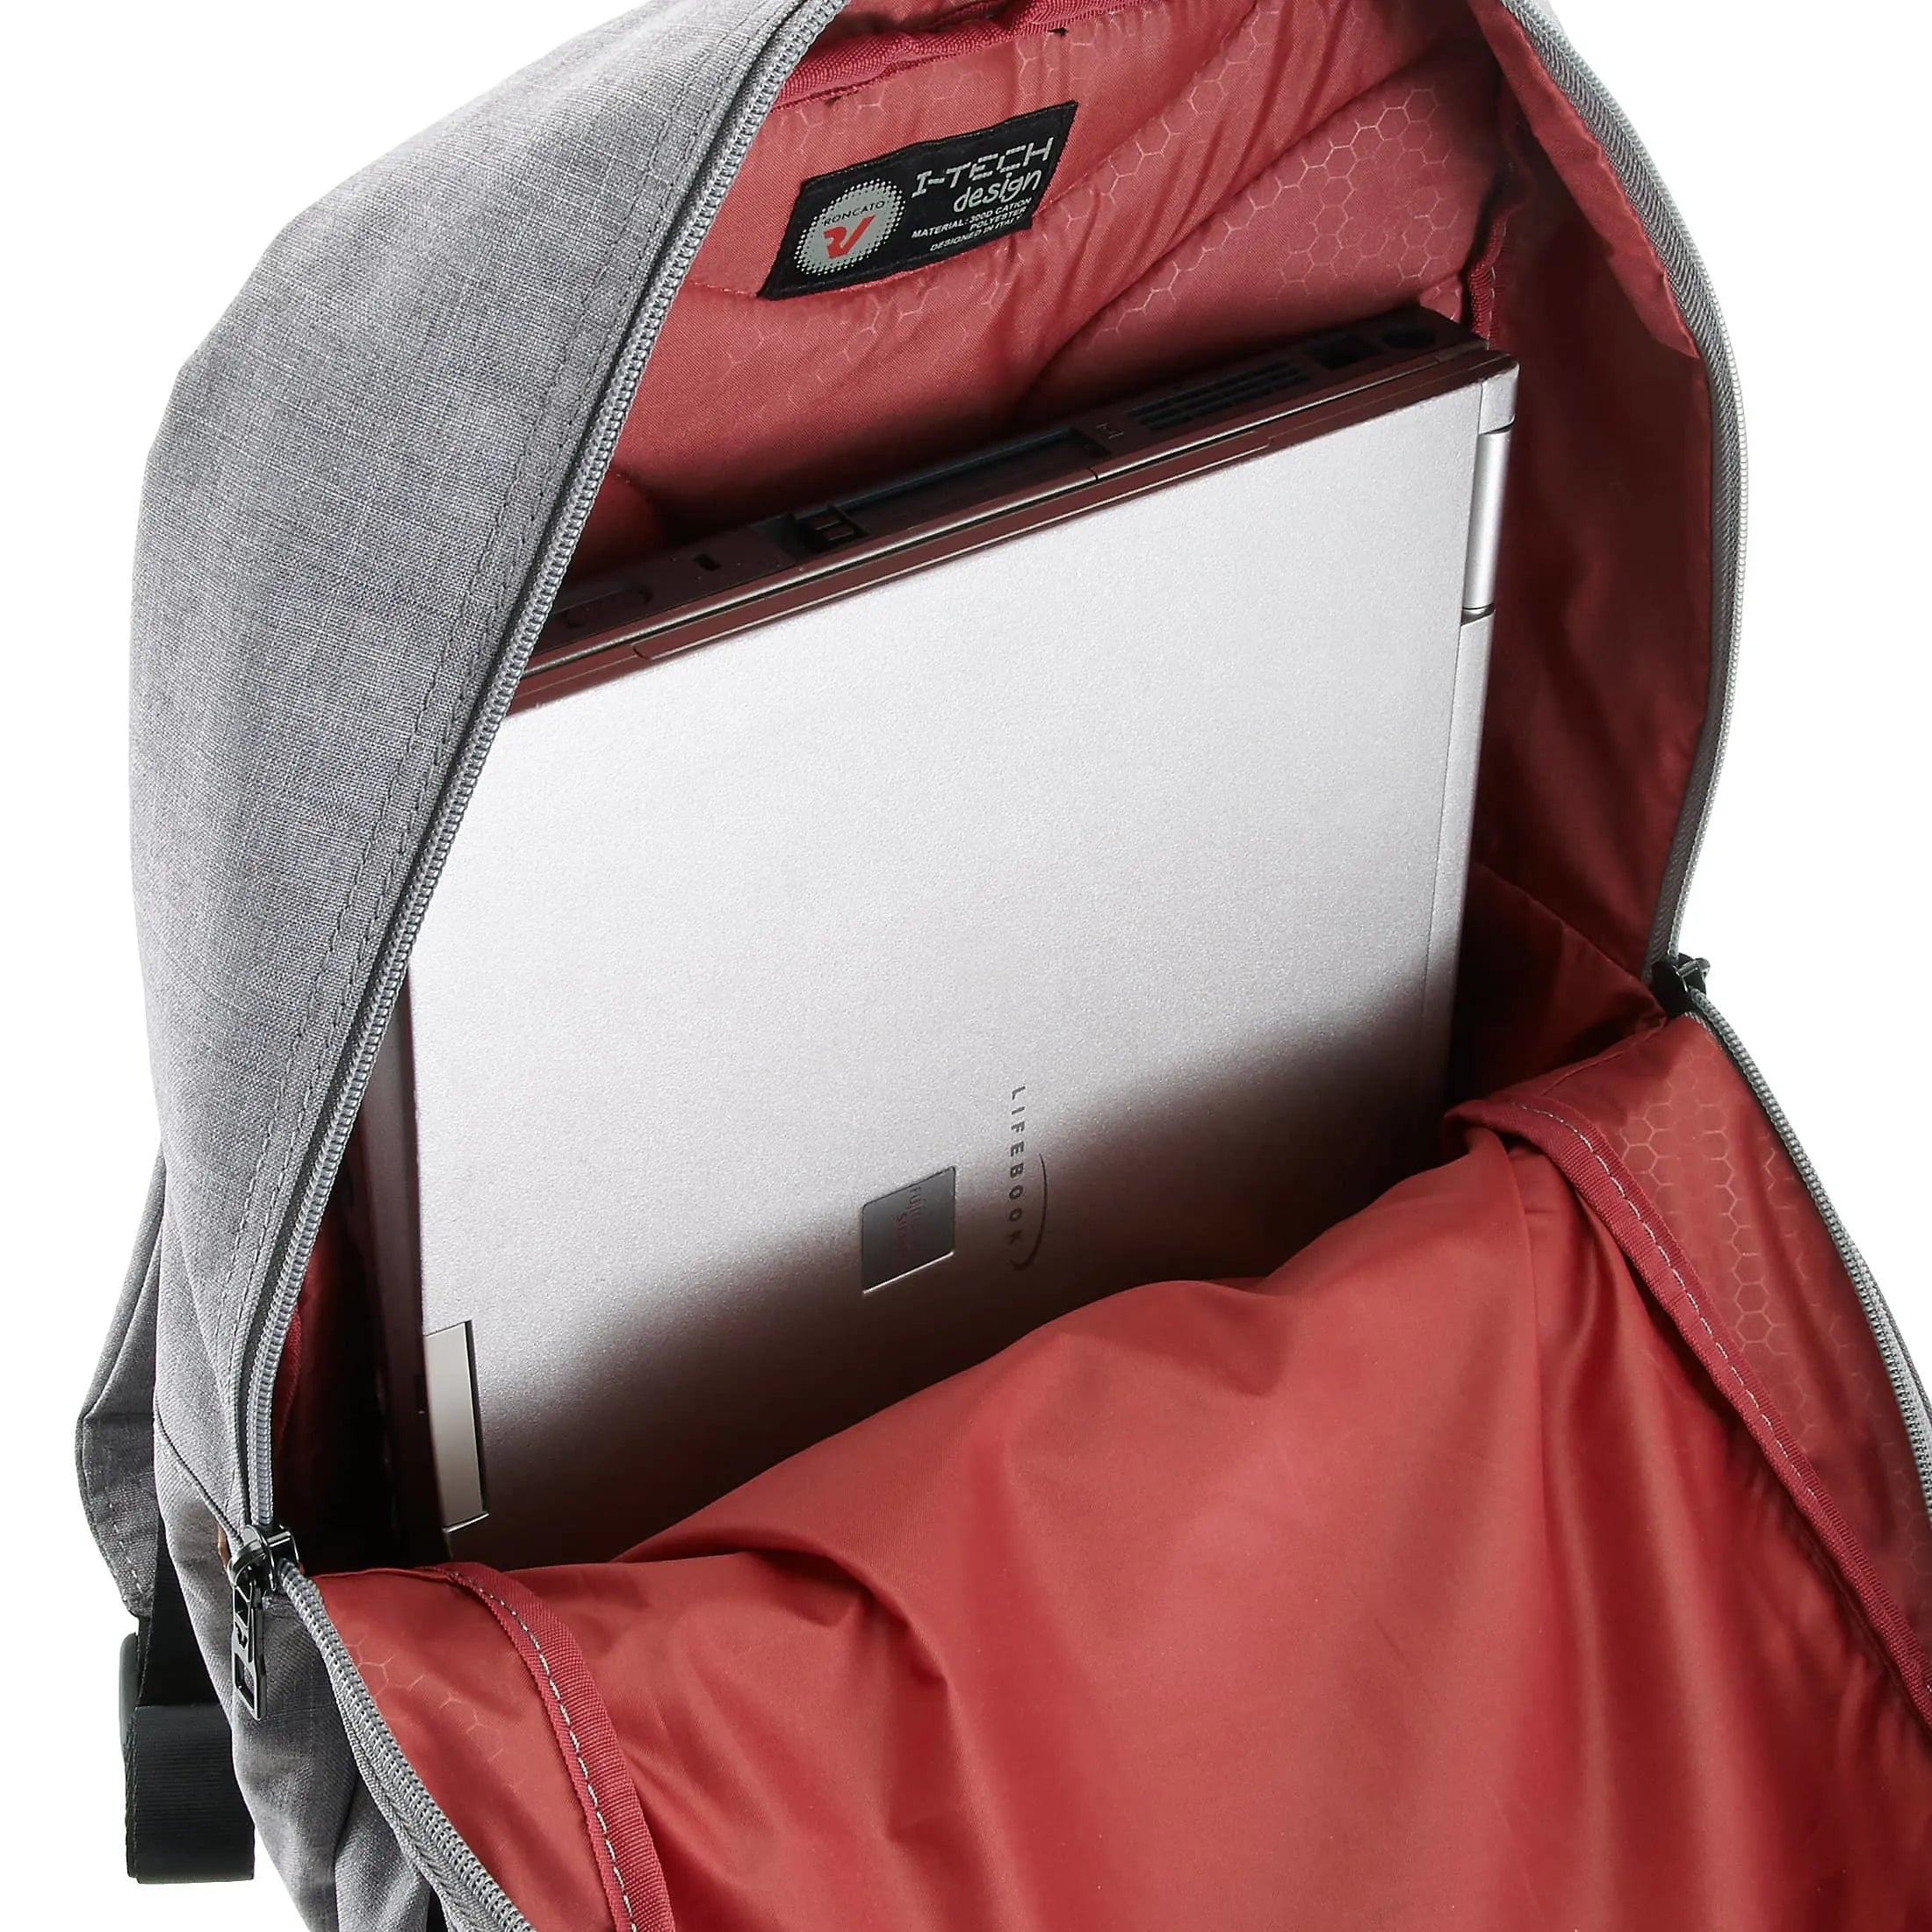 Roncato Adventure sac à dos pour ordinateur portable 40 cm - noir